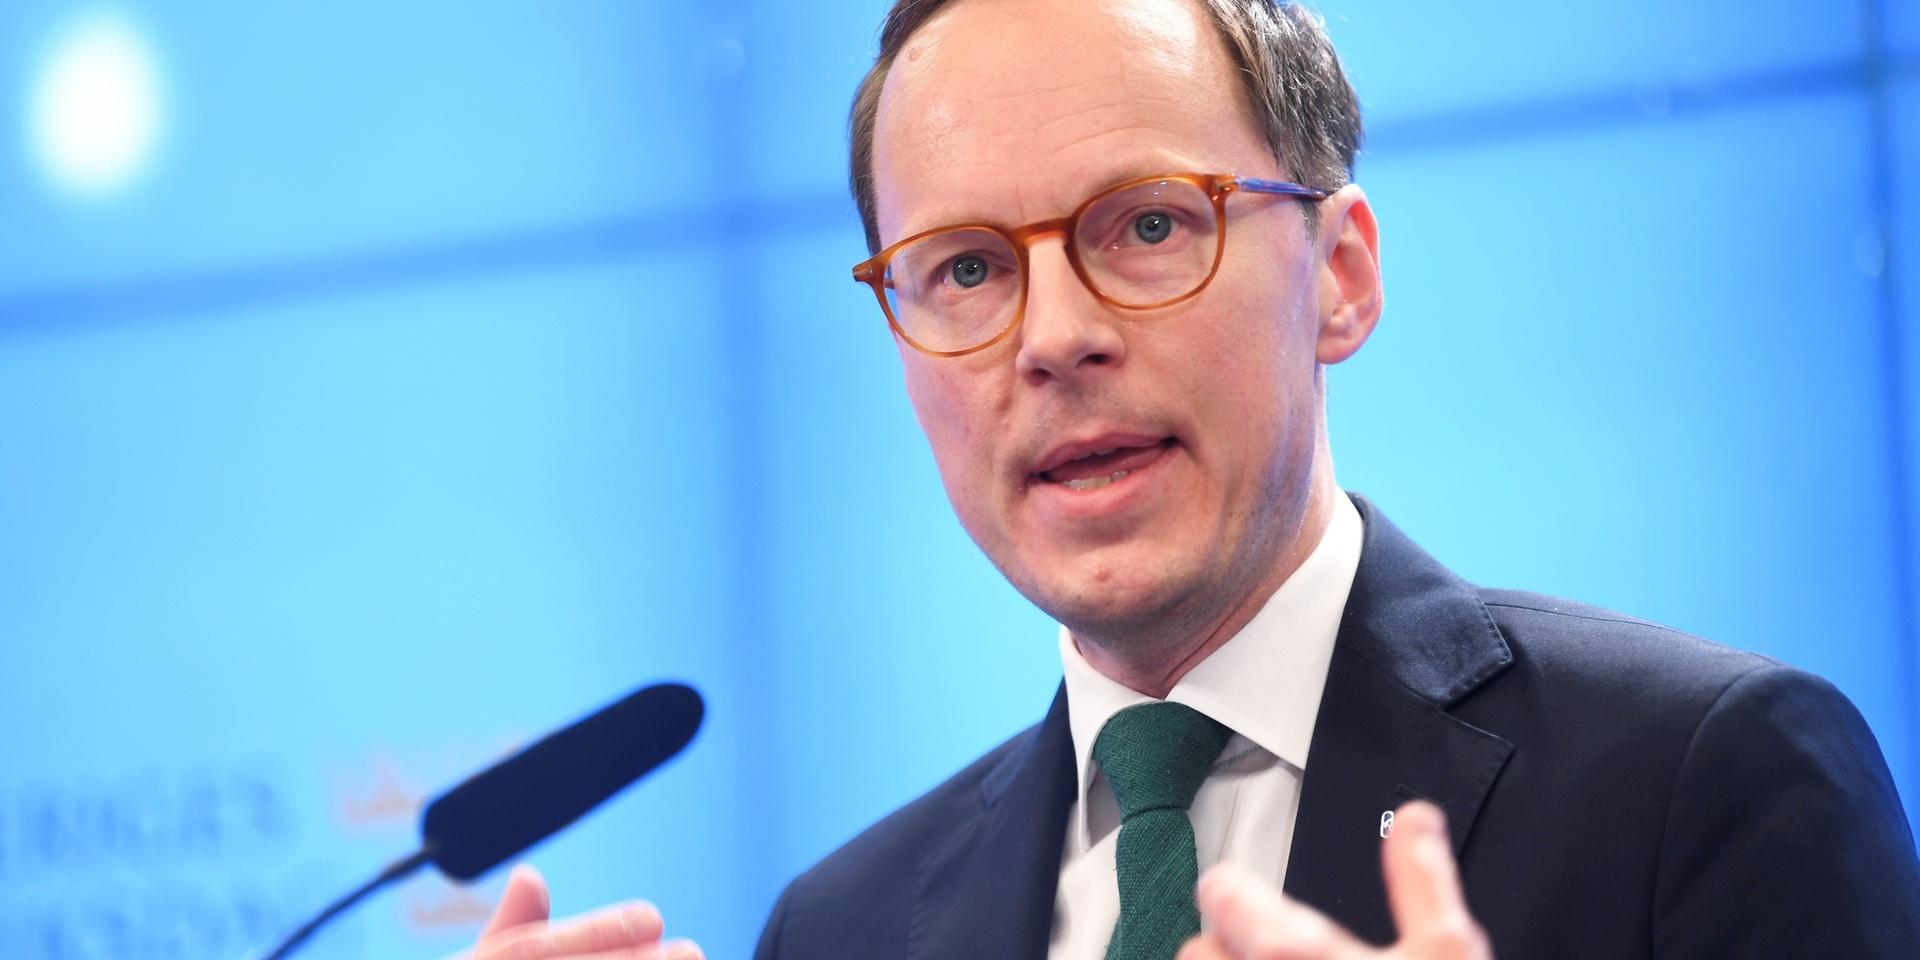 Mats Persson, Liberalernas poltiske talesperson, kommenterar budgetpropositionen vid en pressträff i riksdagens presscenter.